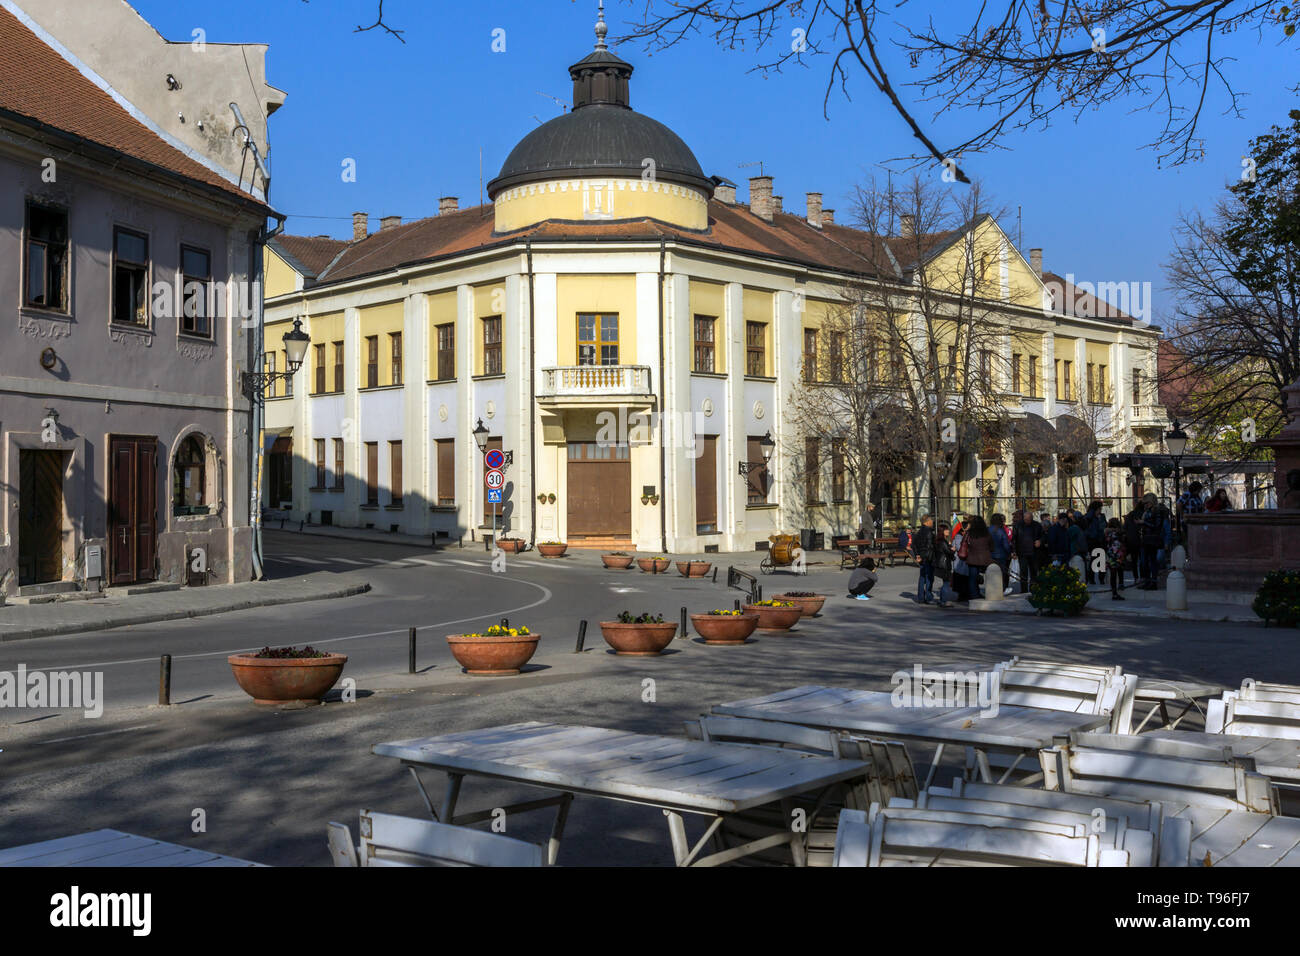 SREMSKI KARLOVCI, VOJVODINA, SERBIA - NOVEMBER 11, 2018: Panoramic view of center of town of Srijemski Karlovci, Vojvodina, Serbia Stock Photo